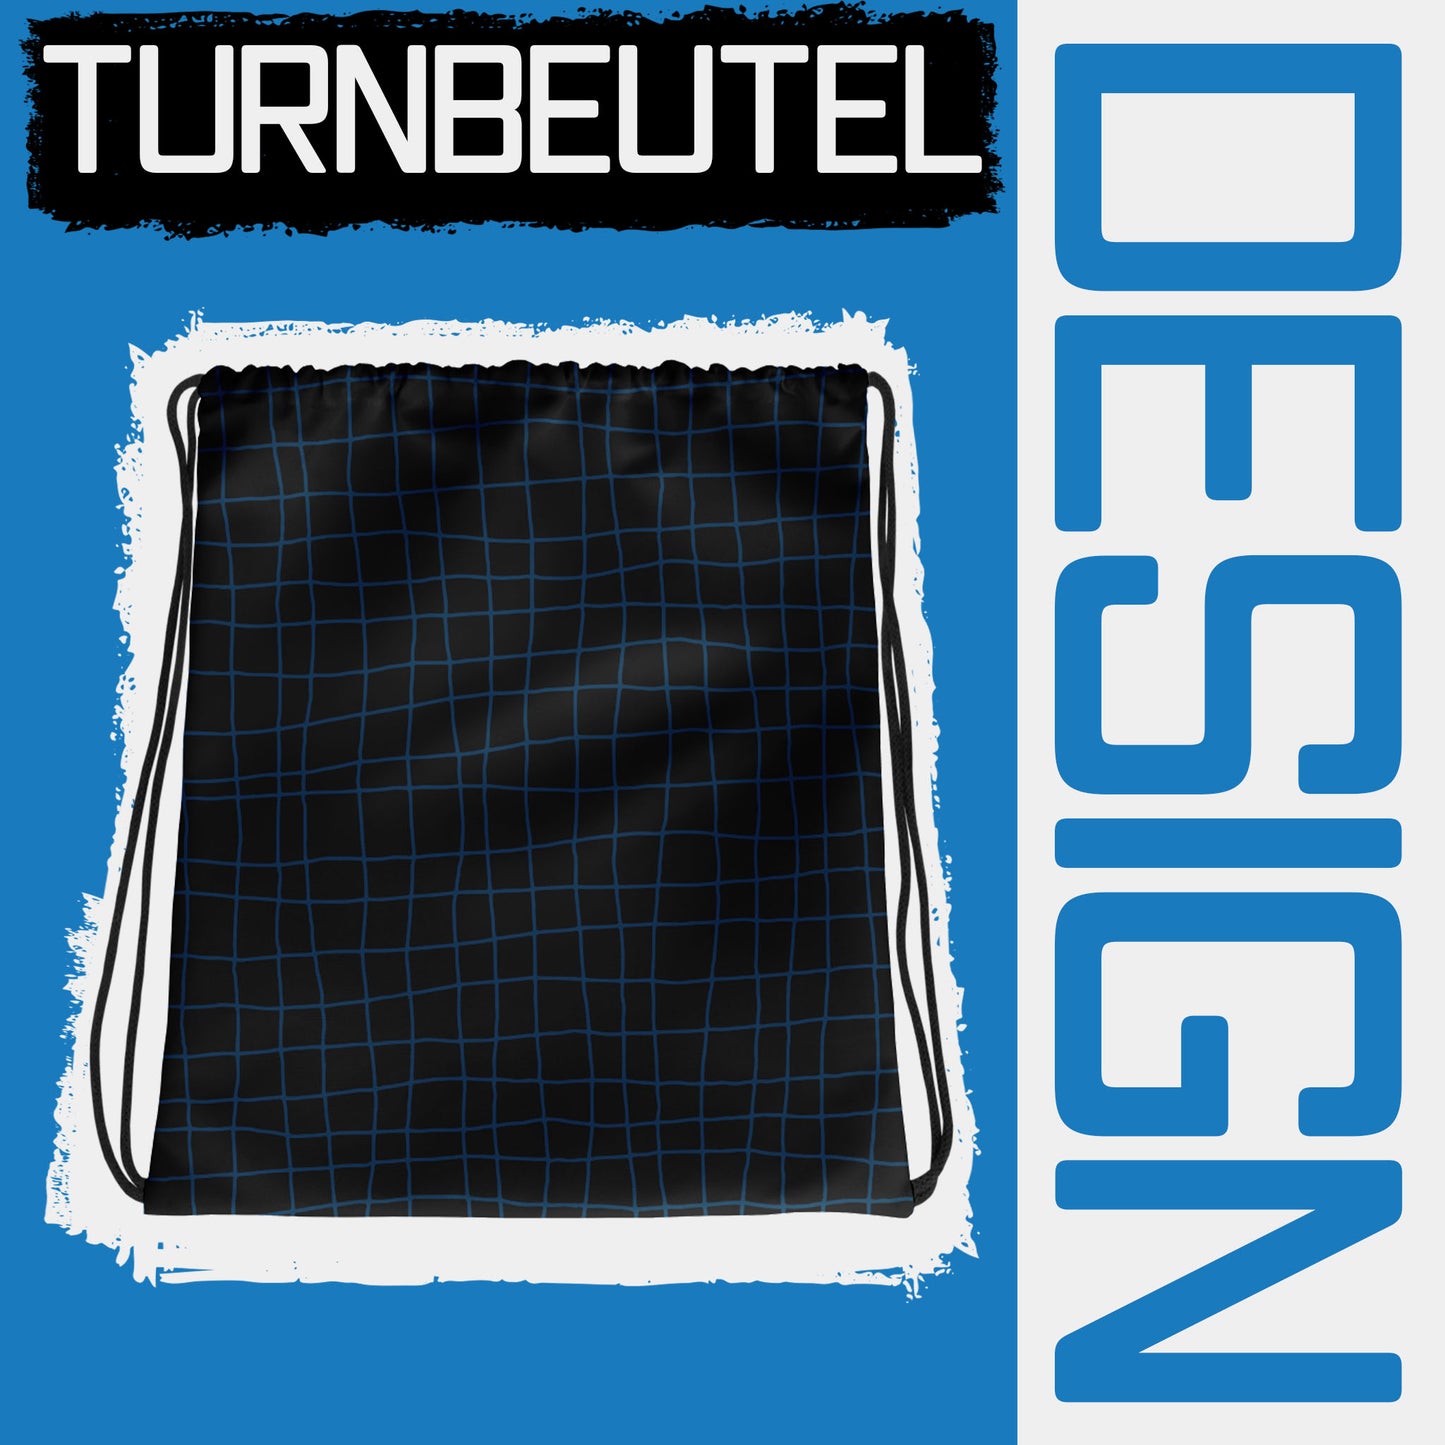 Turnbeutel Design